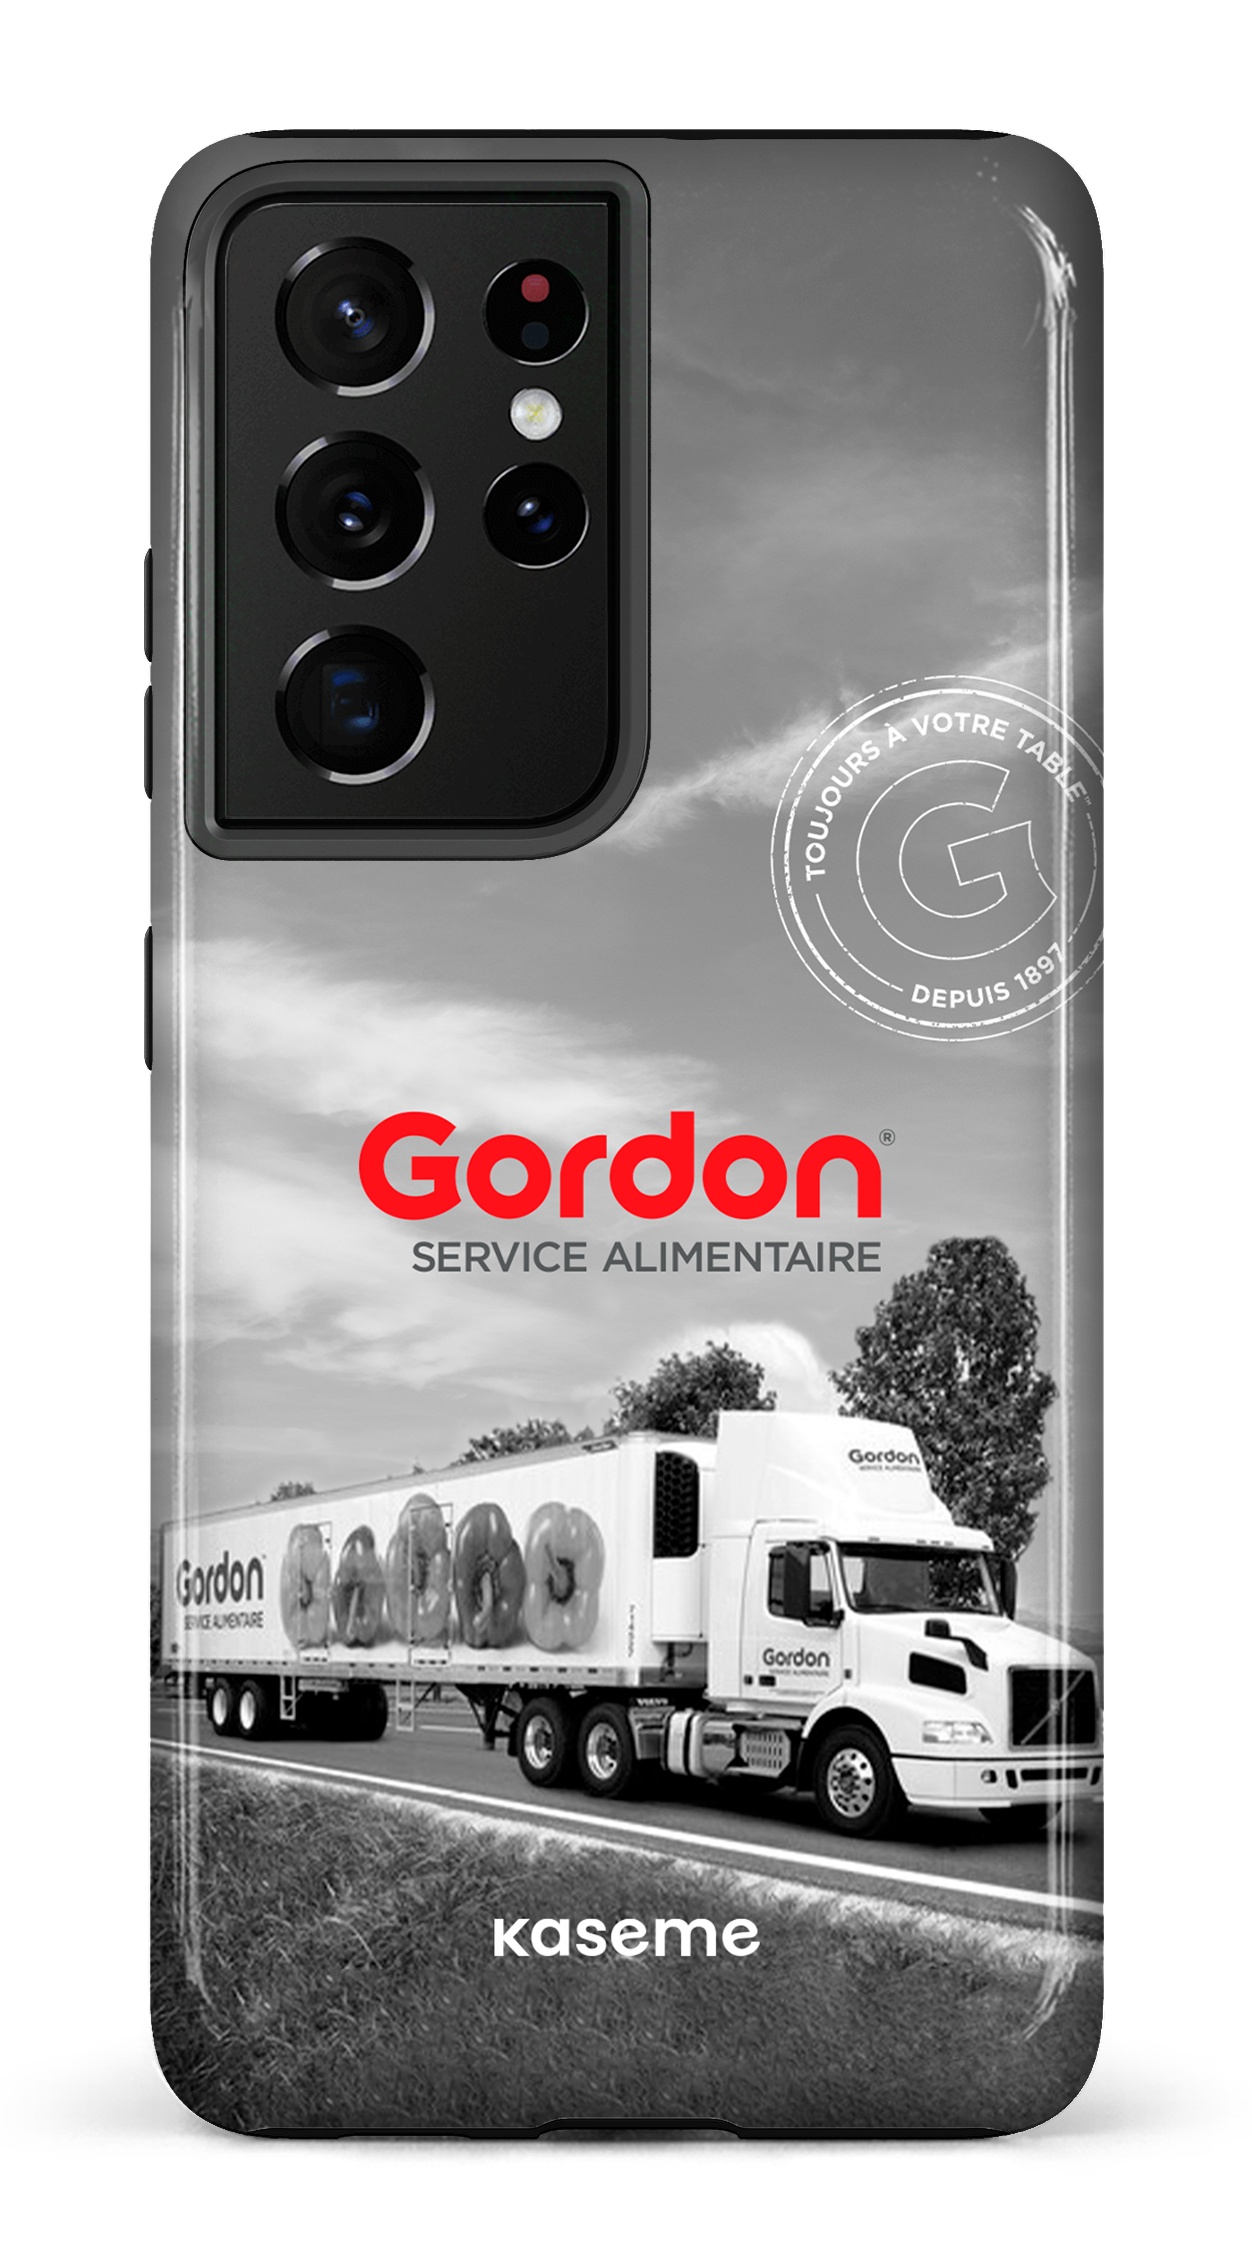 Gordon Francais - Galaxy S21 Ultra